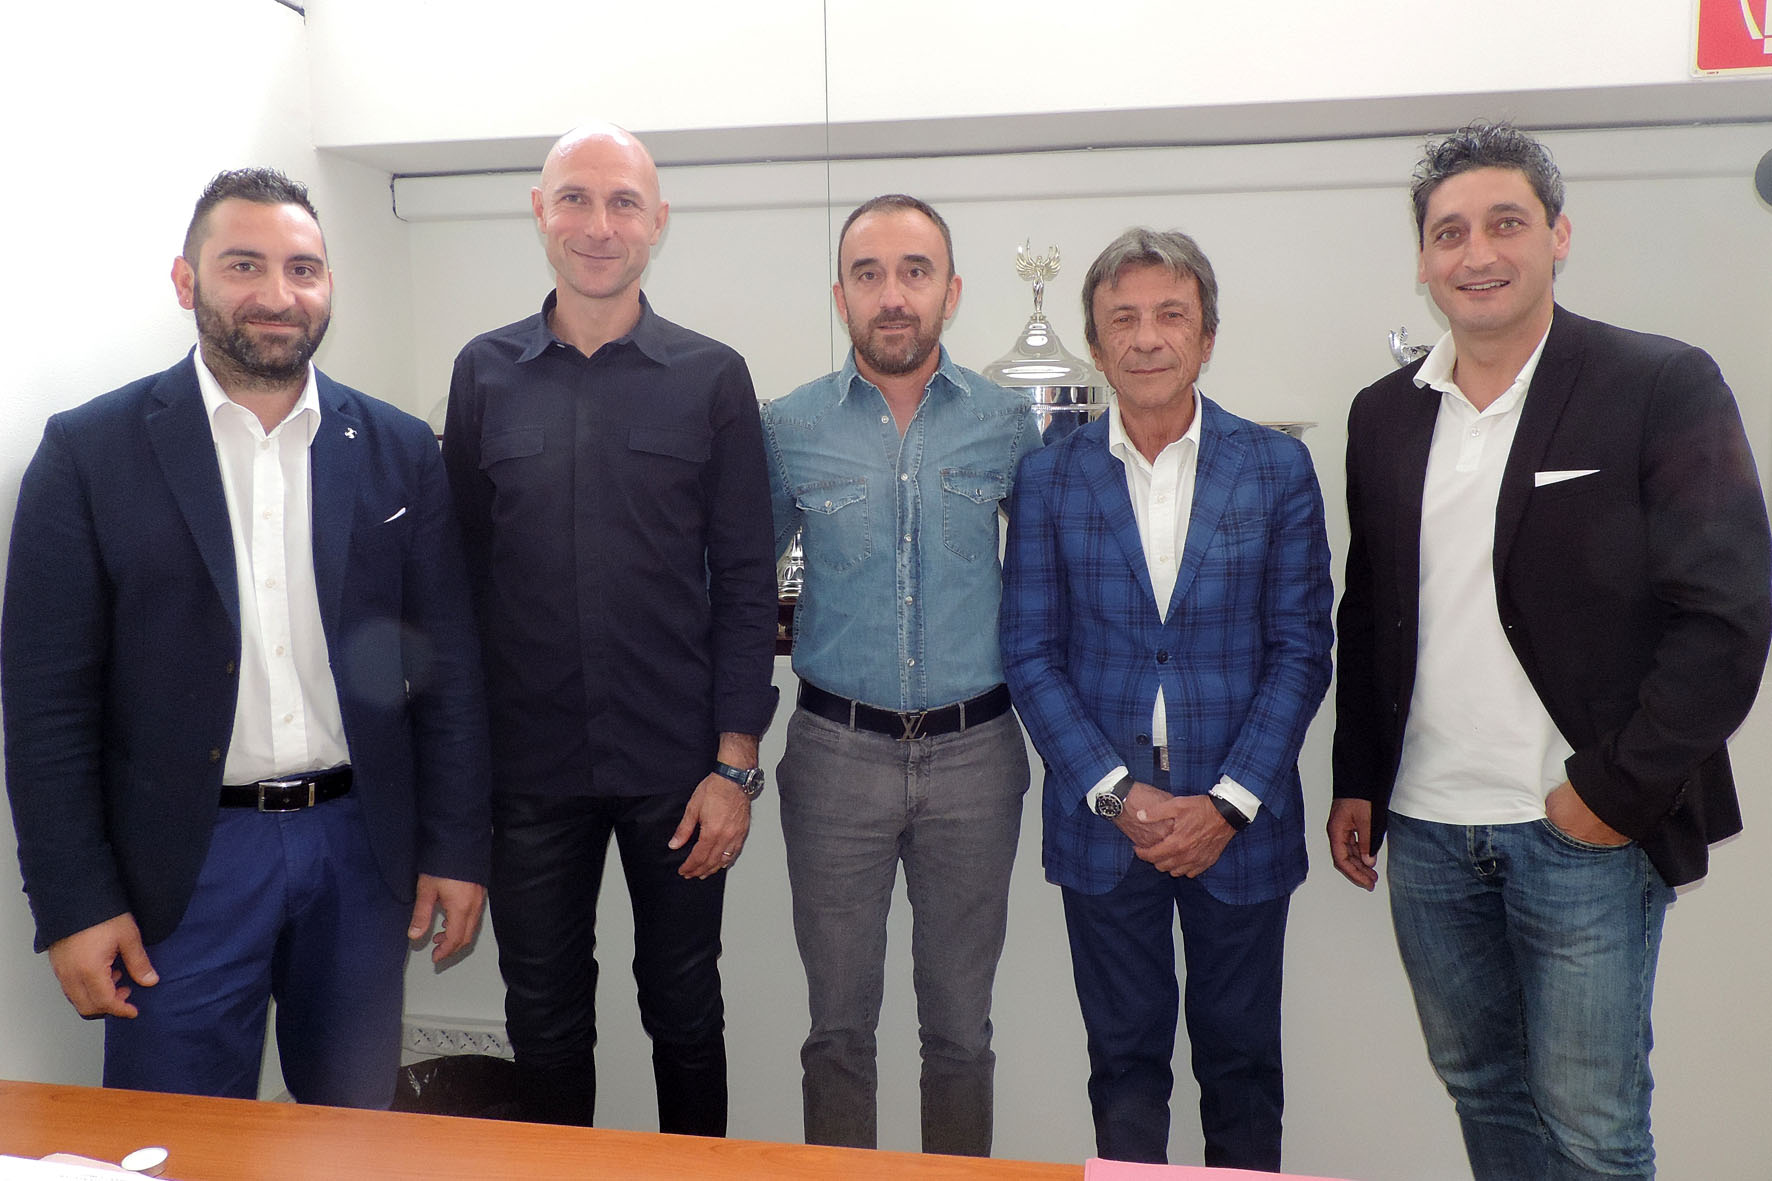 flo staff dirigenziale con il nuovo allenatore Stefano Sottili